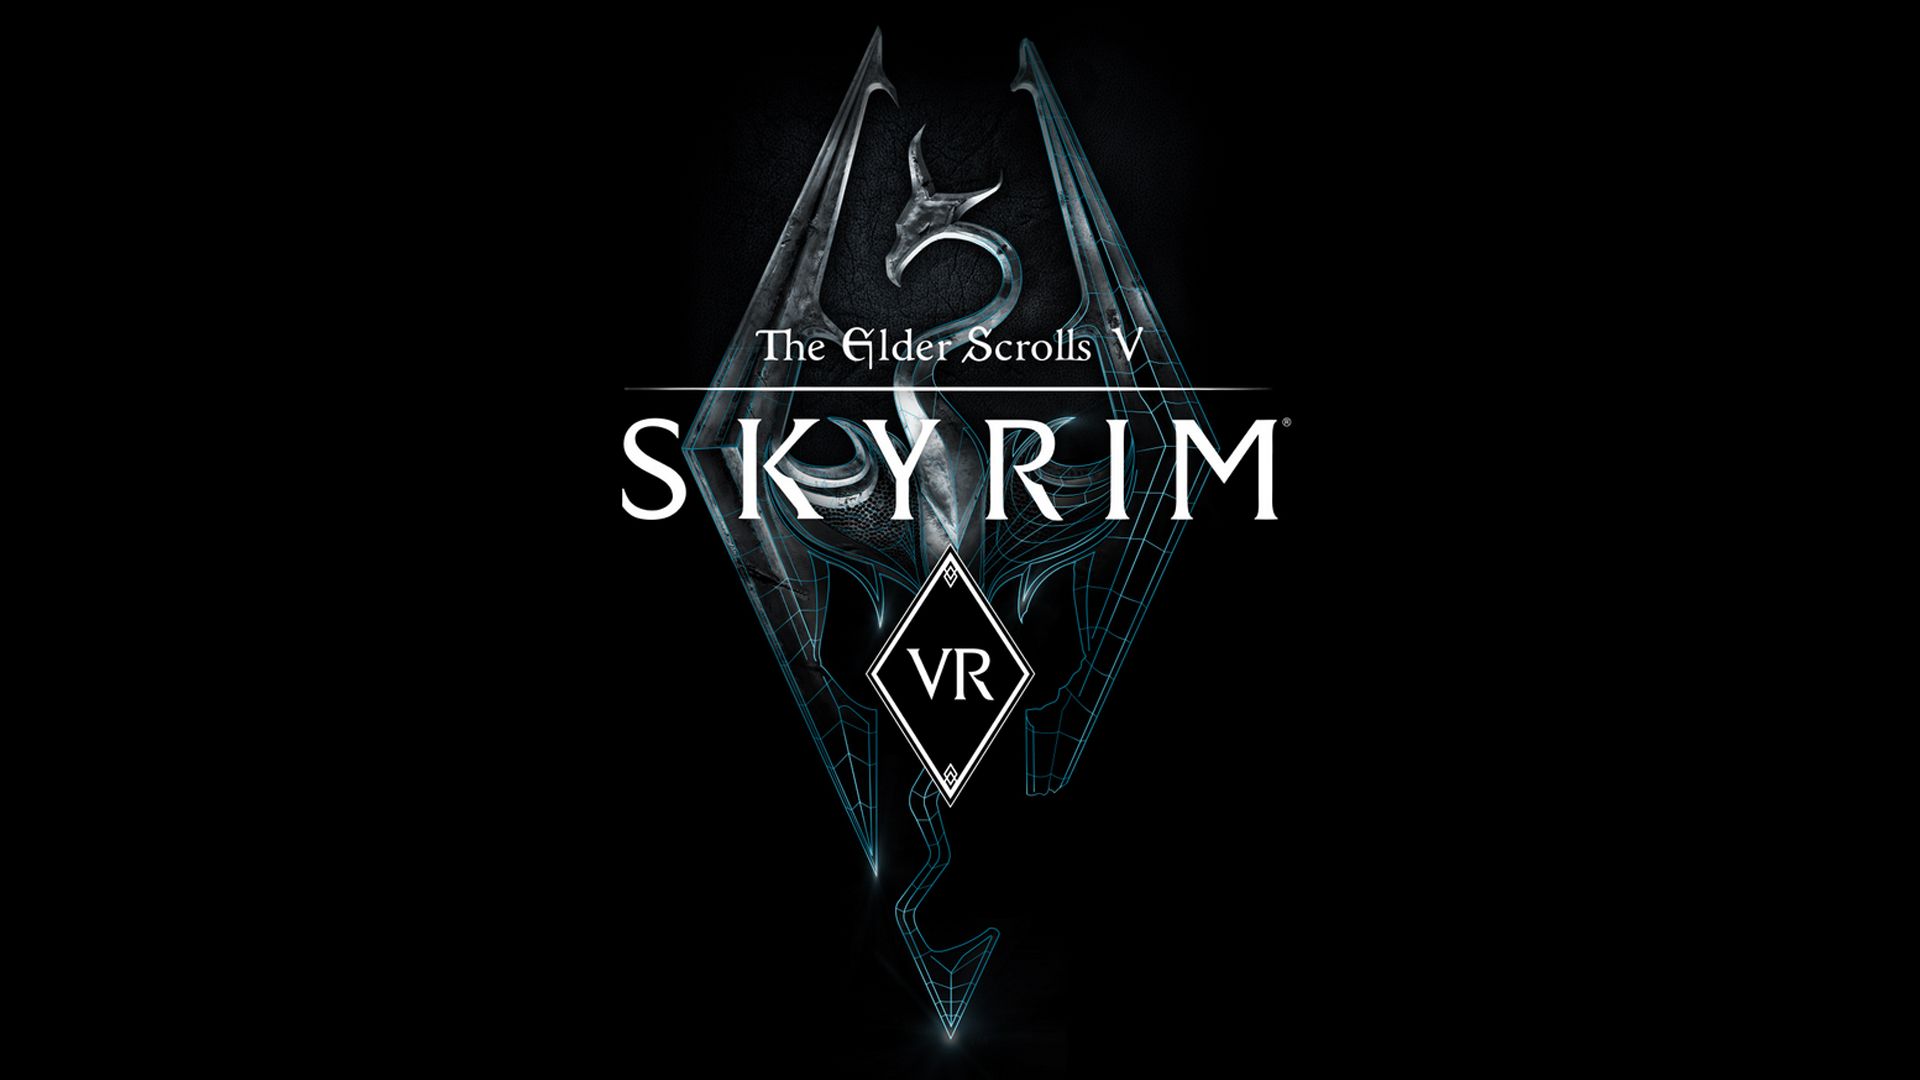 Descripción del juego The Elder Scrolls V: Skyrim VR